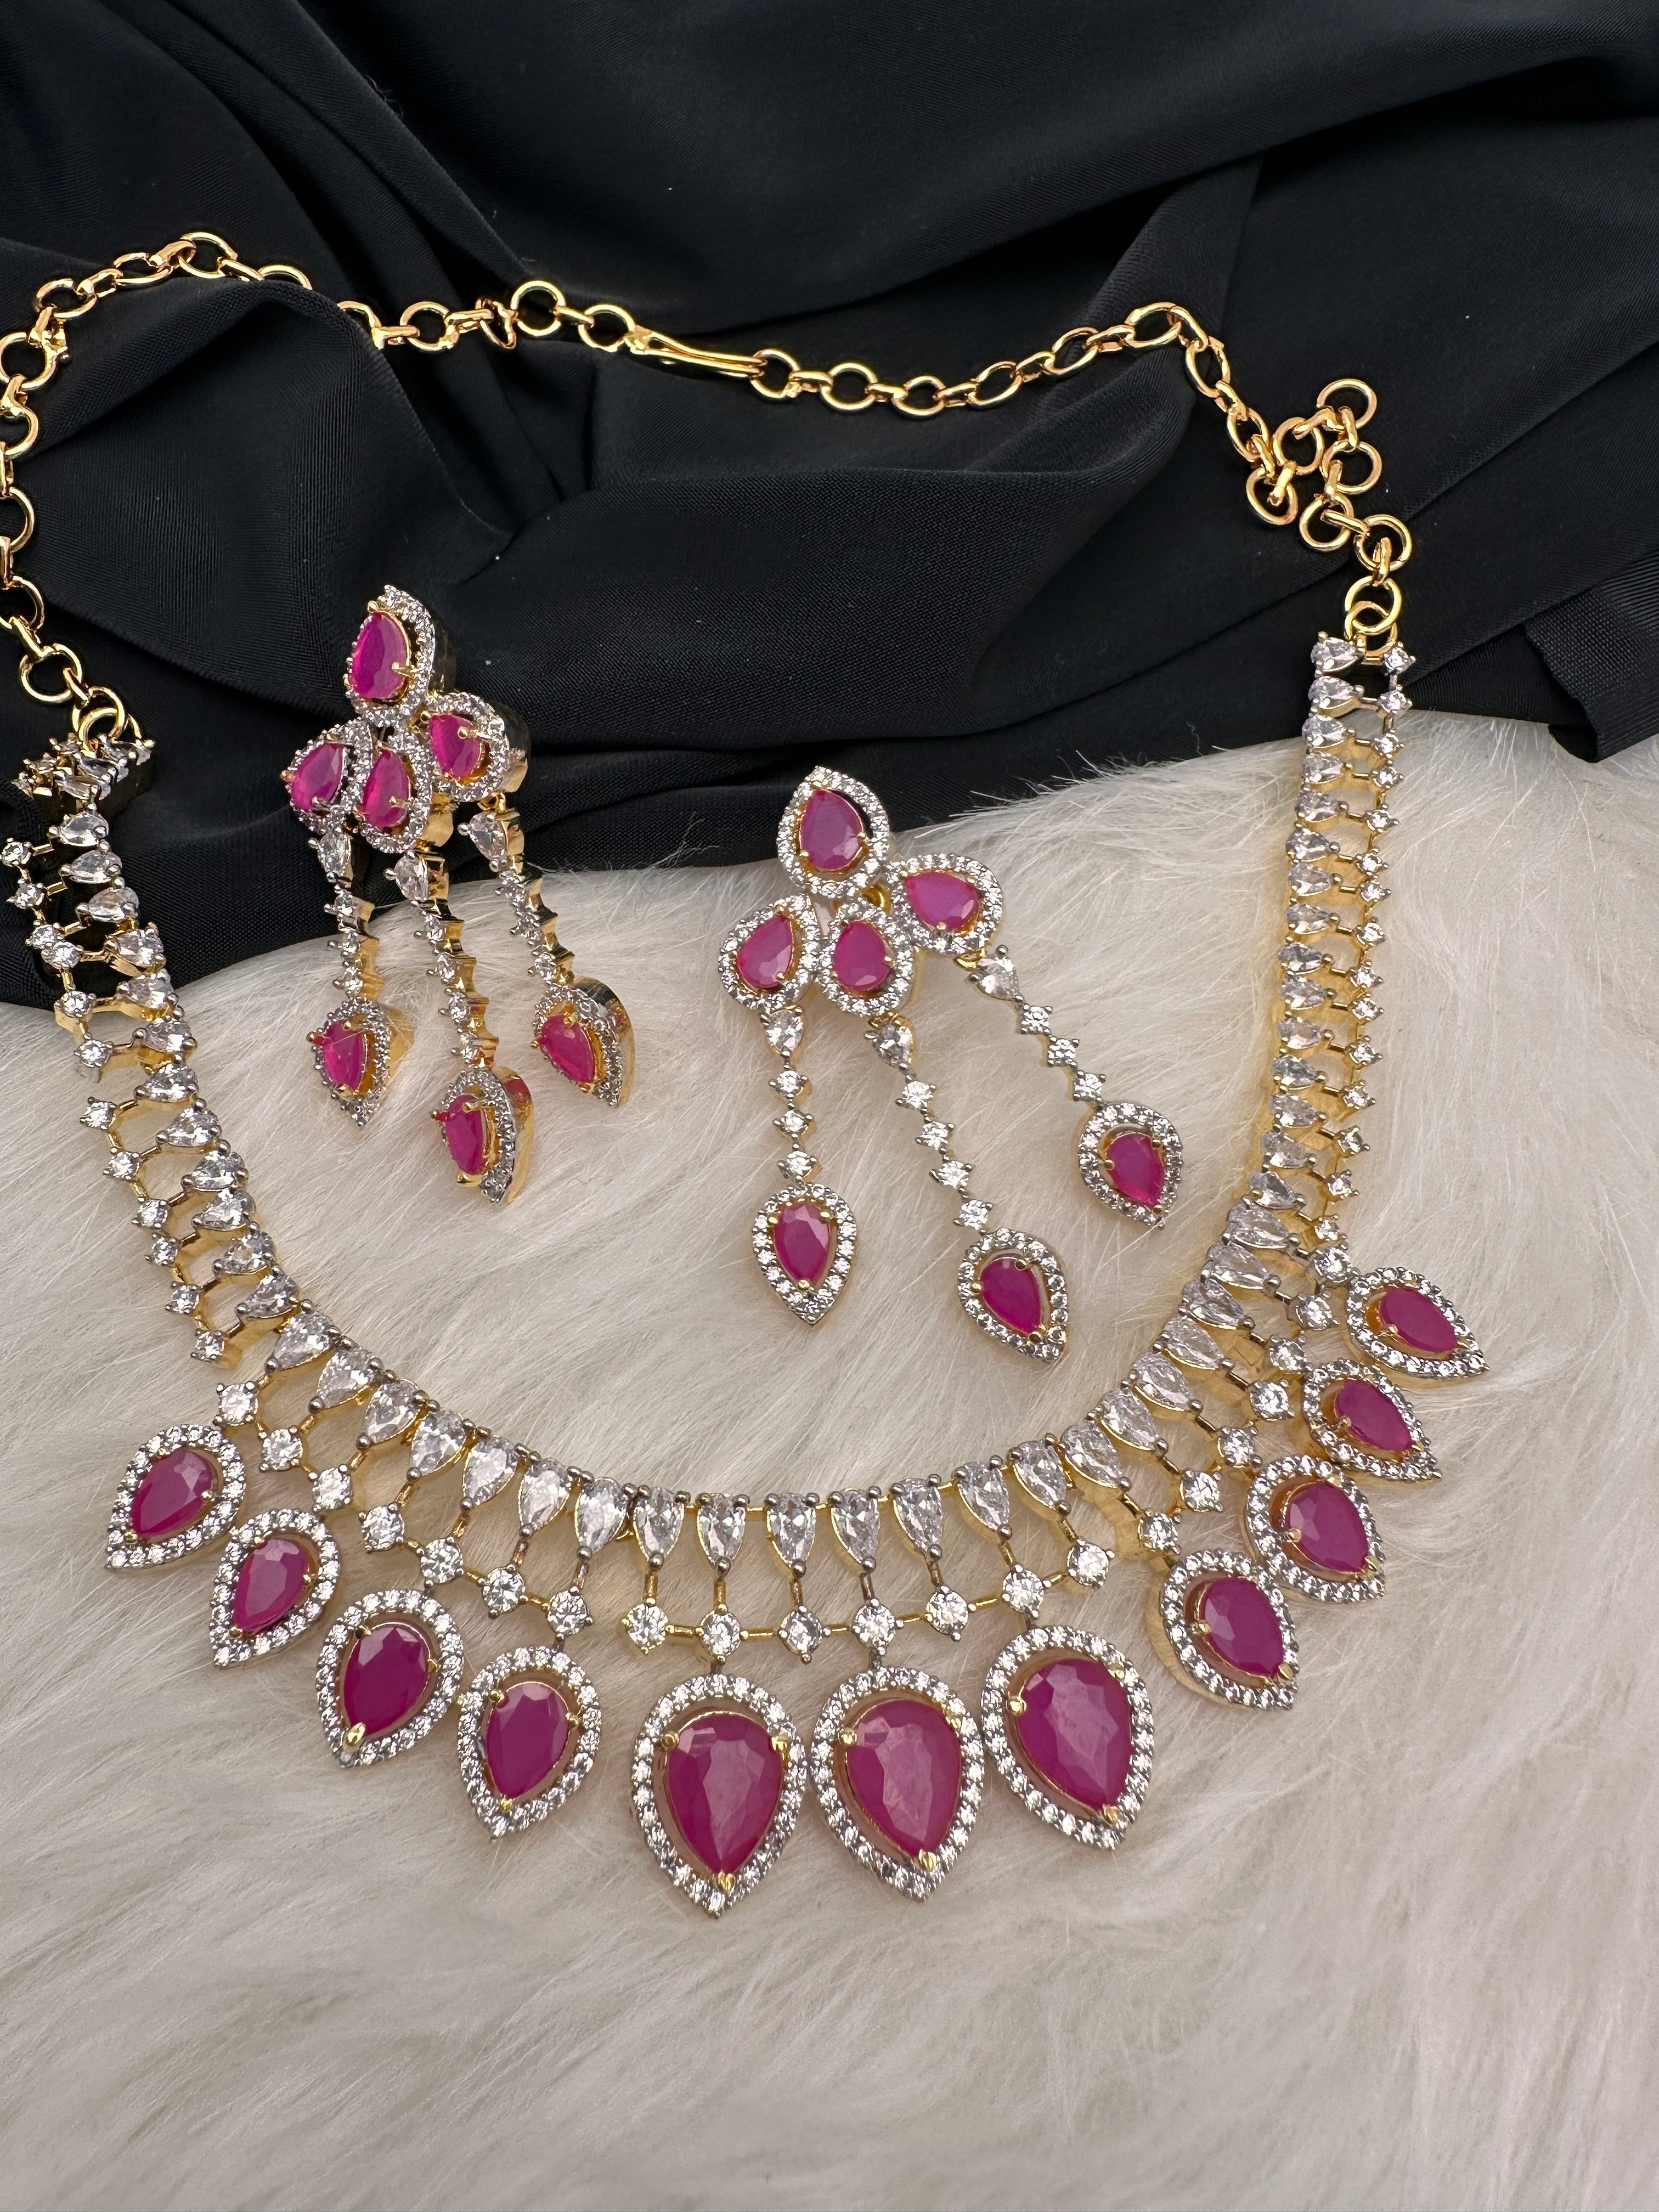 Buy Semi Precious Stone Necklace Online – Gehna Shop